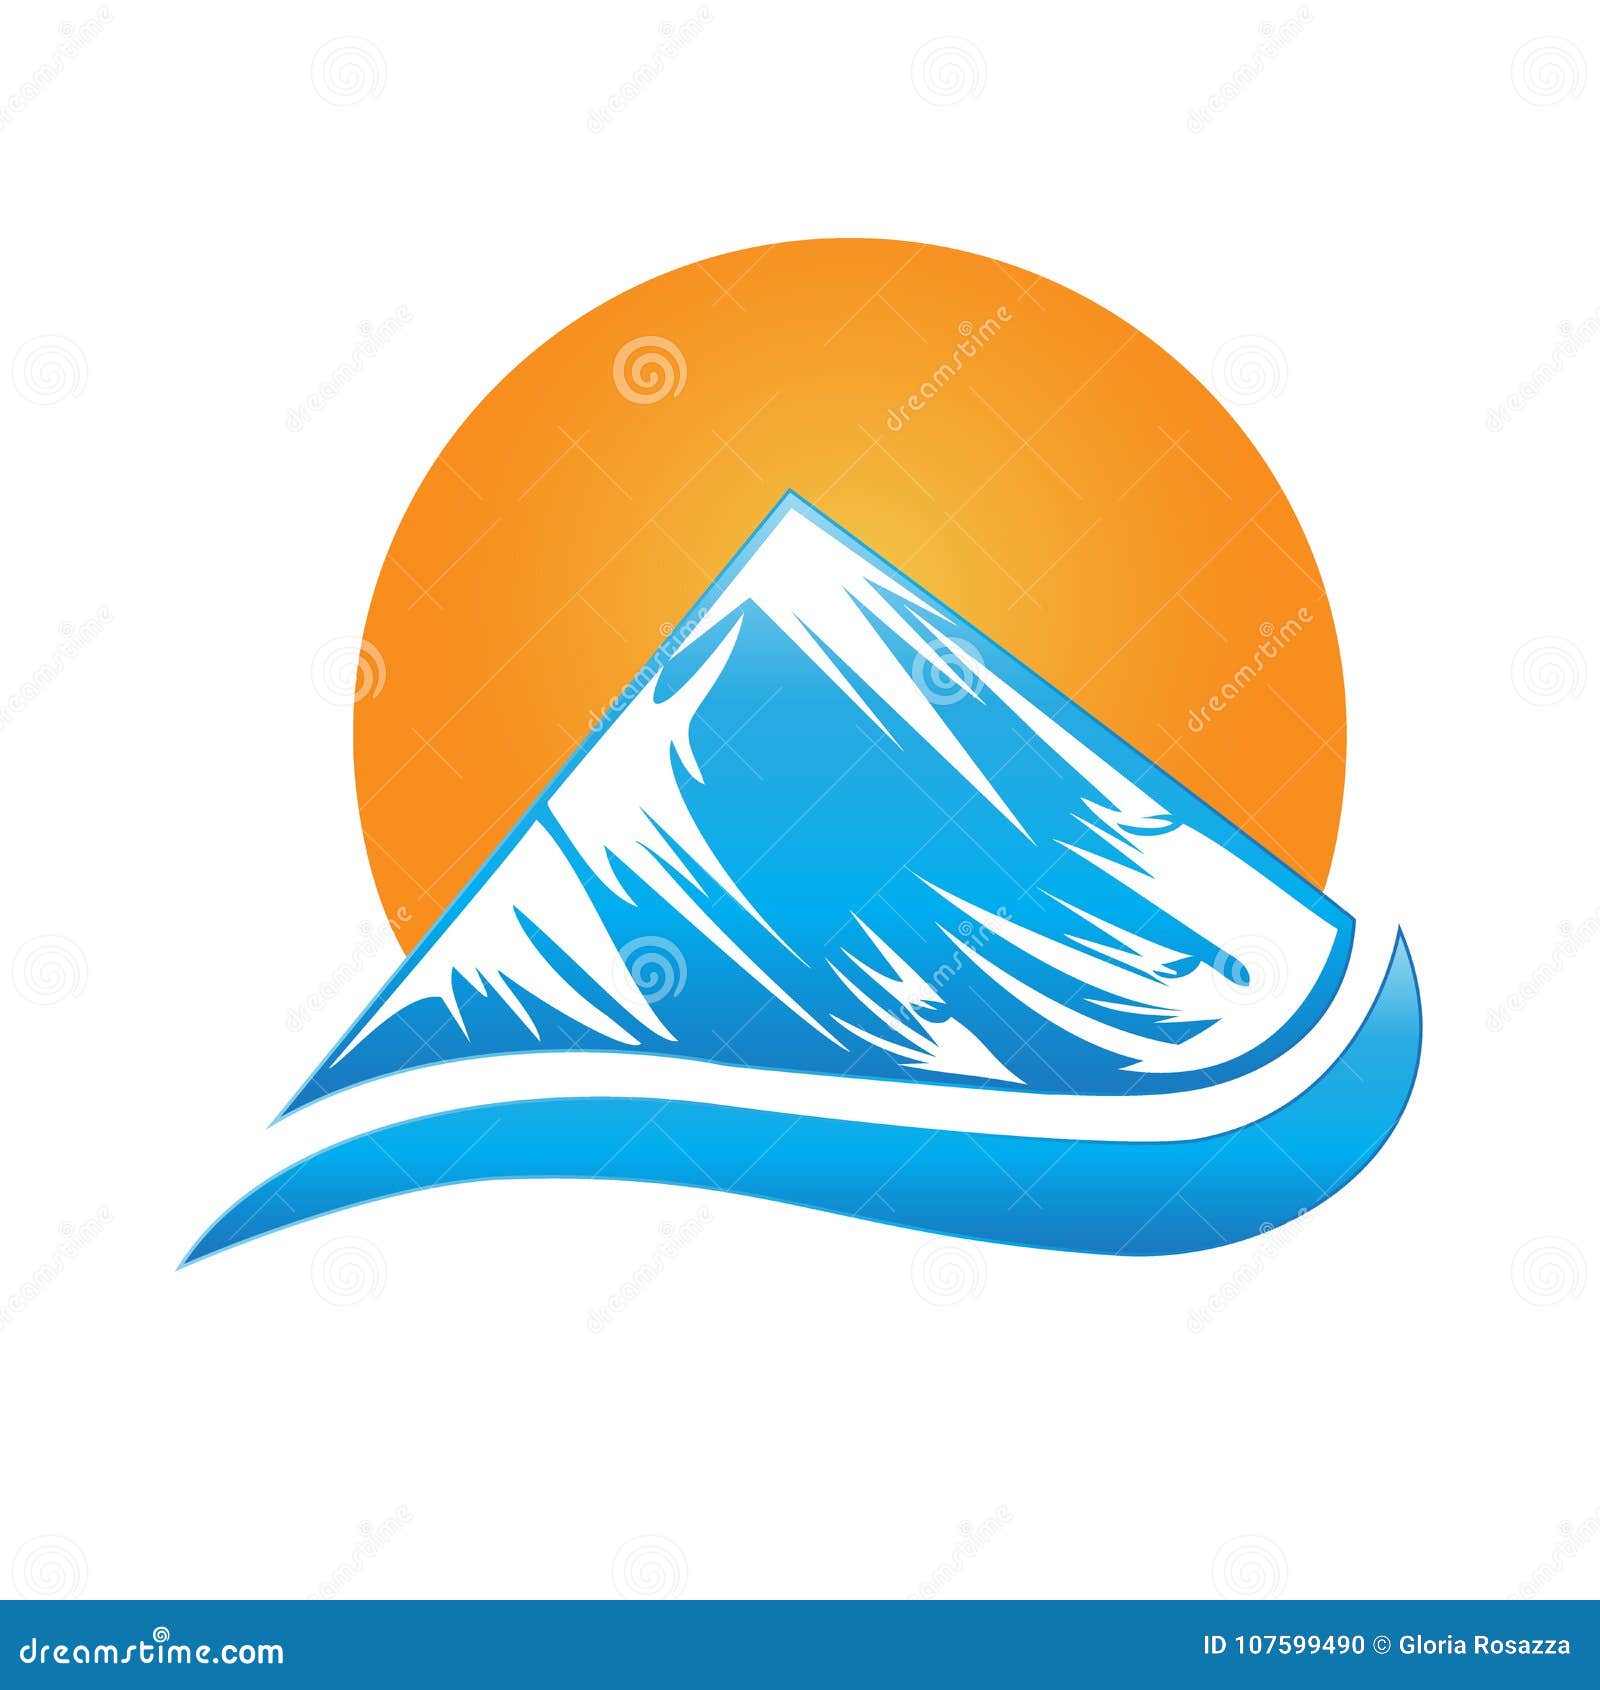 L Image Bleue De Montagne Et De Soleil De Logo Dirigent La Carte D Identite D Icone Illustration De Vecteur Illustration Du Logo Dirigent